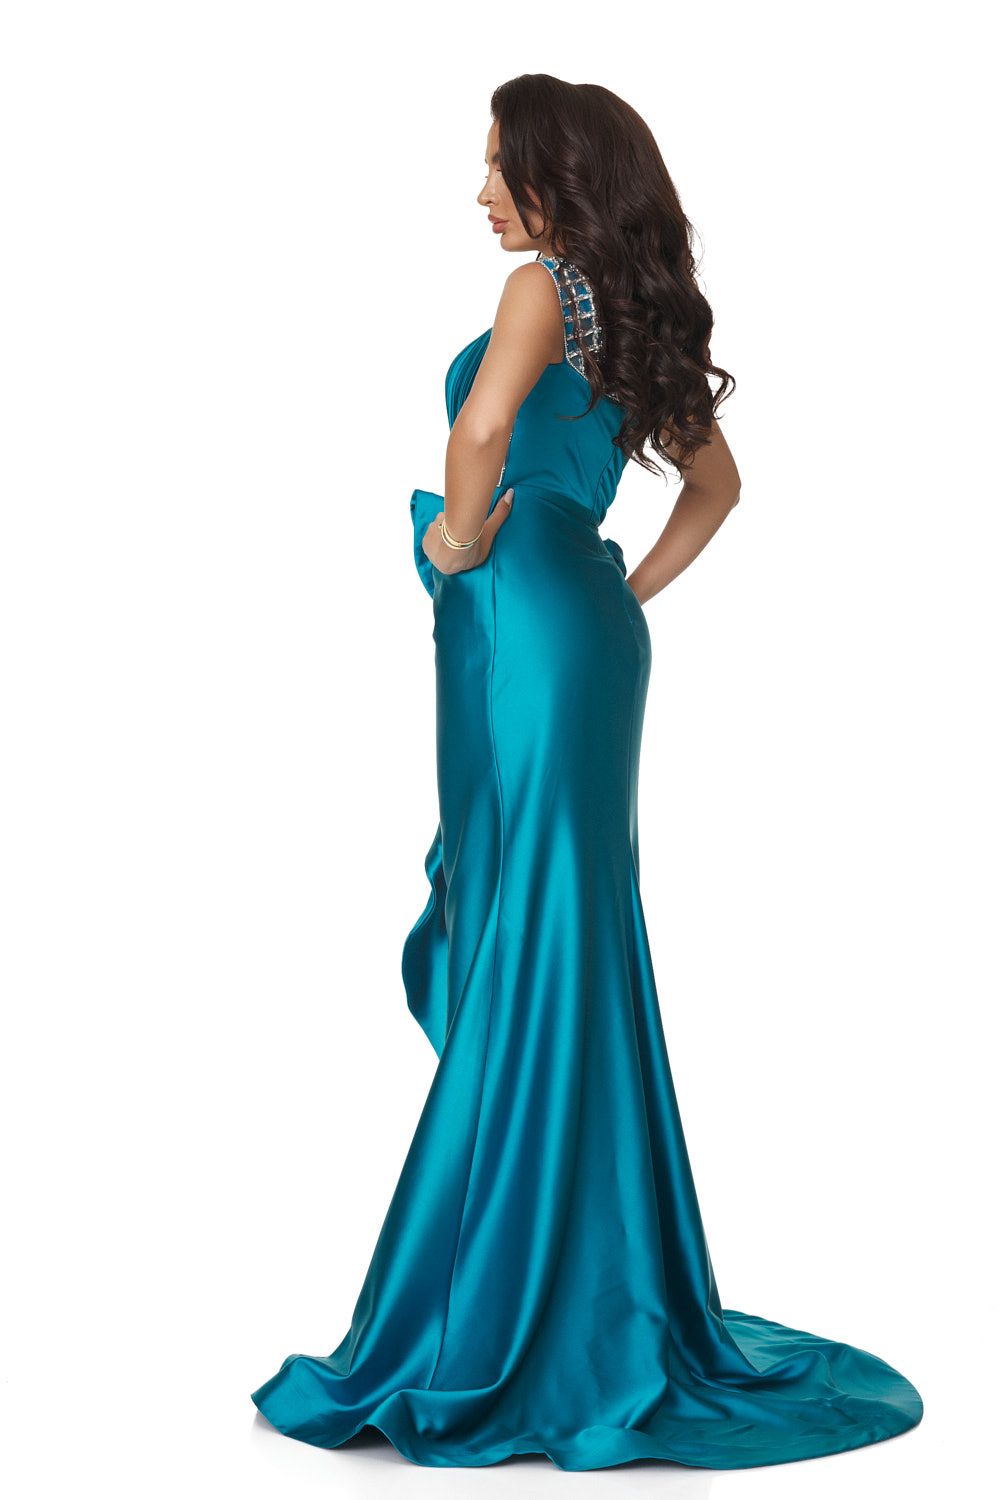 Long turquoise taffeta dress for women, Felssia Bogas